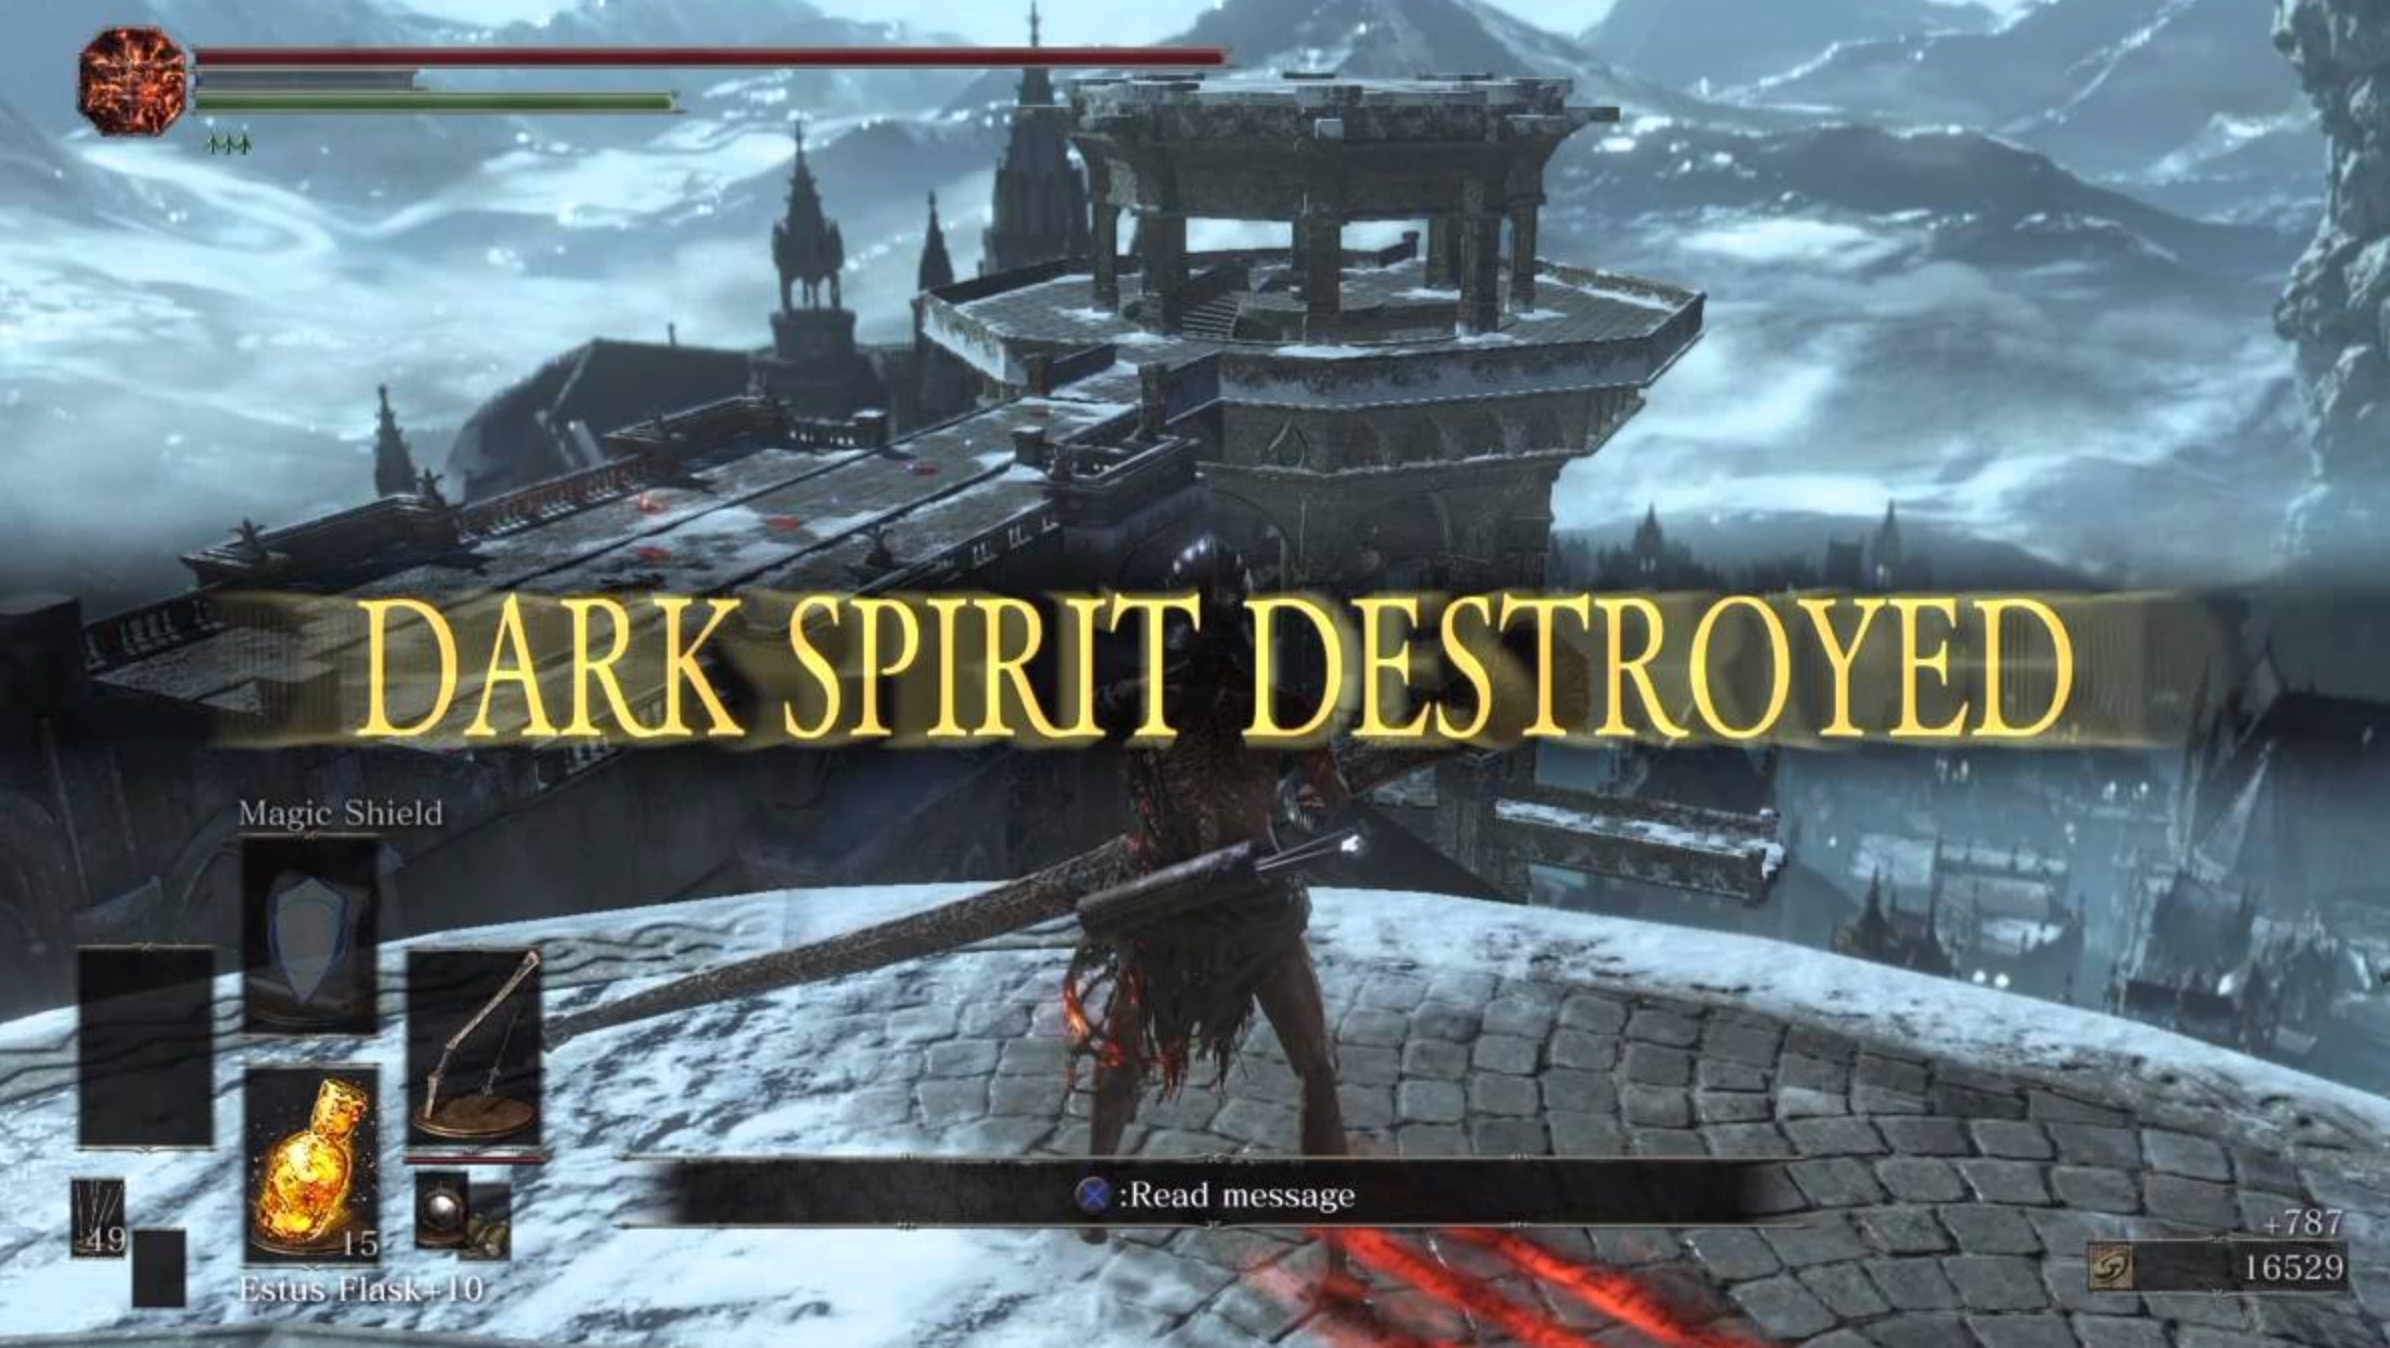 Dark Spirit Destroyed message from Dark Souls 3